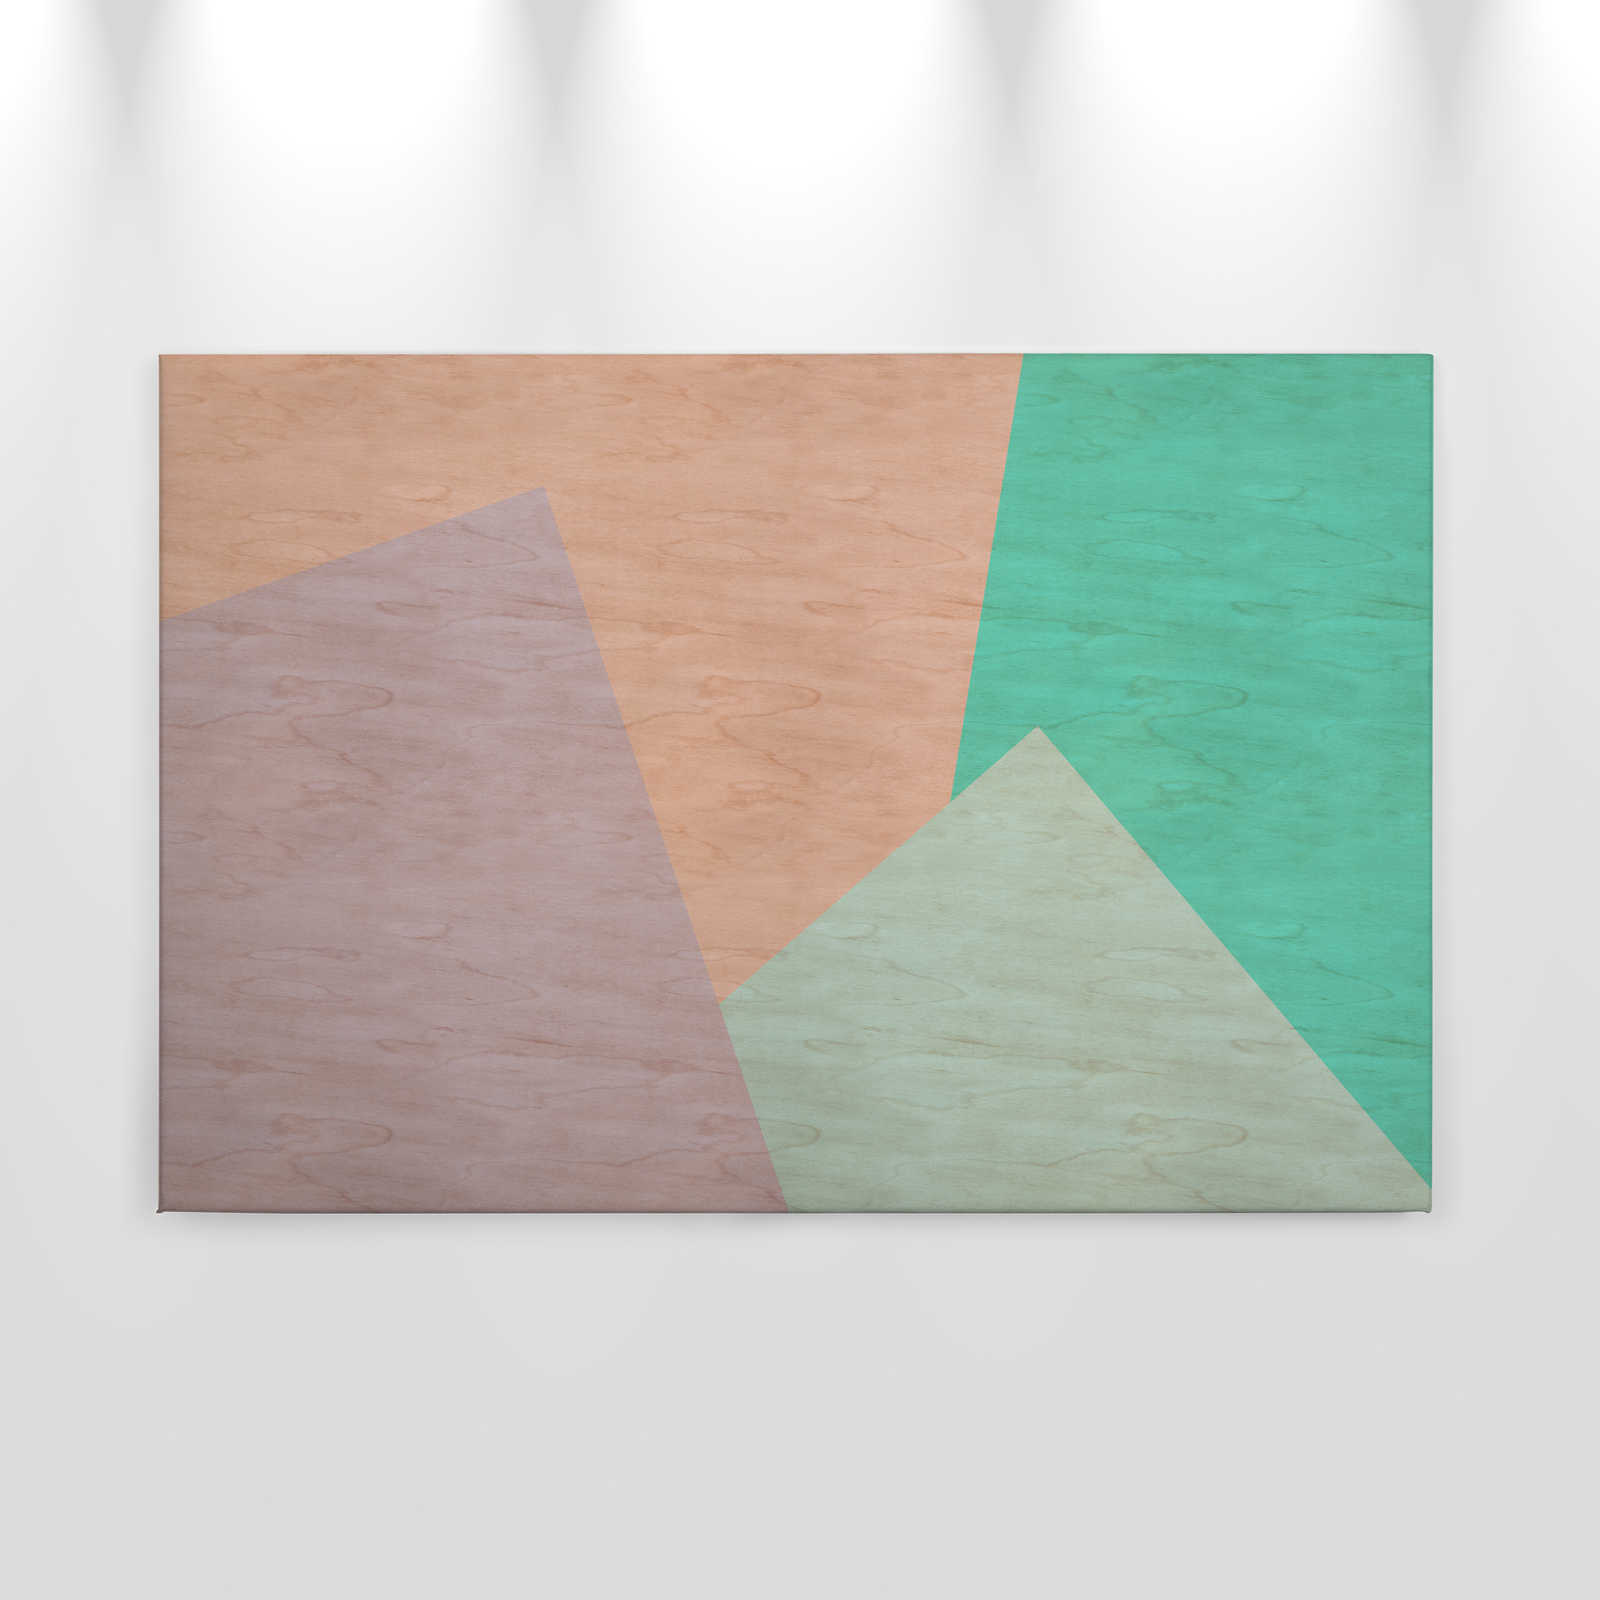             Inaly 1 - Quadro astratto su tela colorata in struttura di compensato - 0,90 m x 0,60 m
        